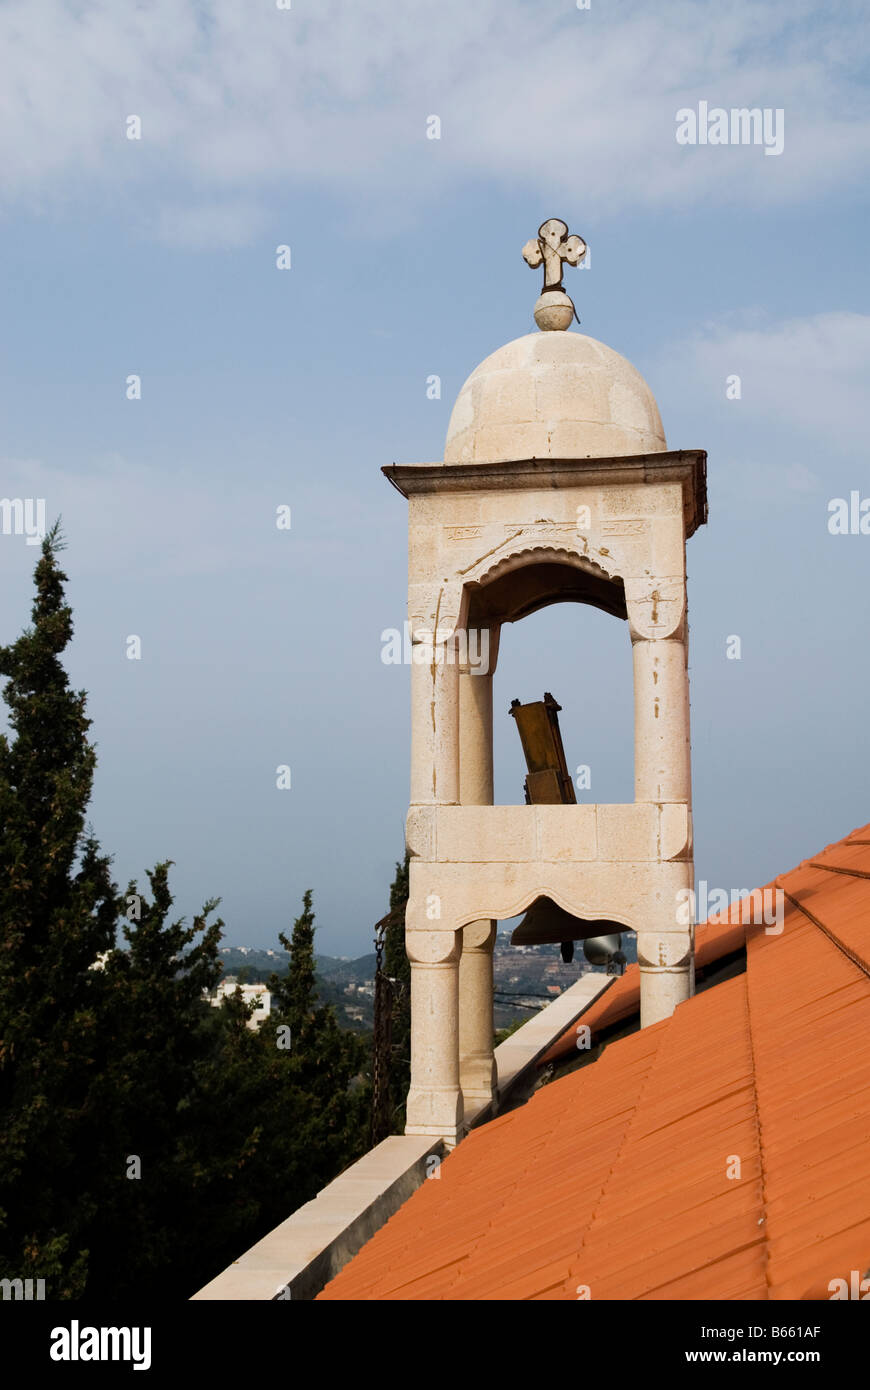 Haut de l'église clocher Liban Moyen Orient Banque D'Images